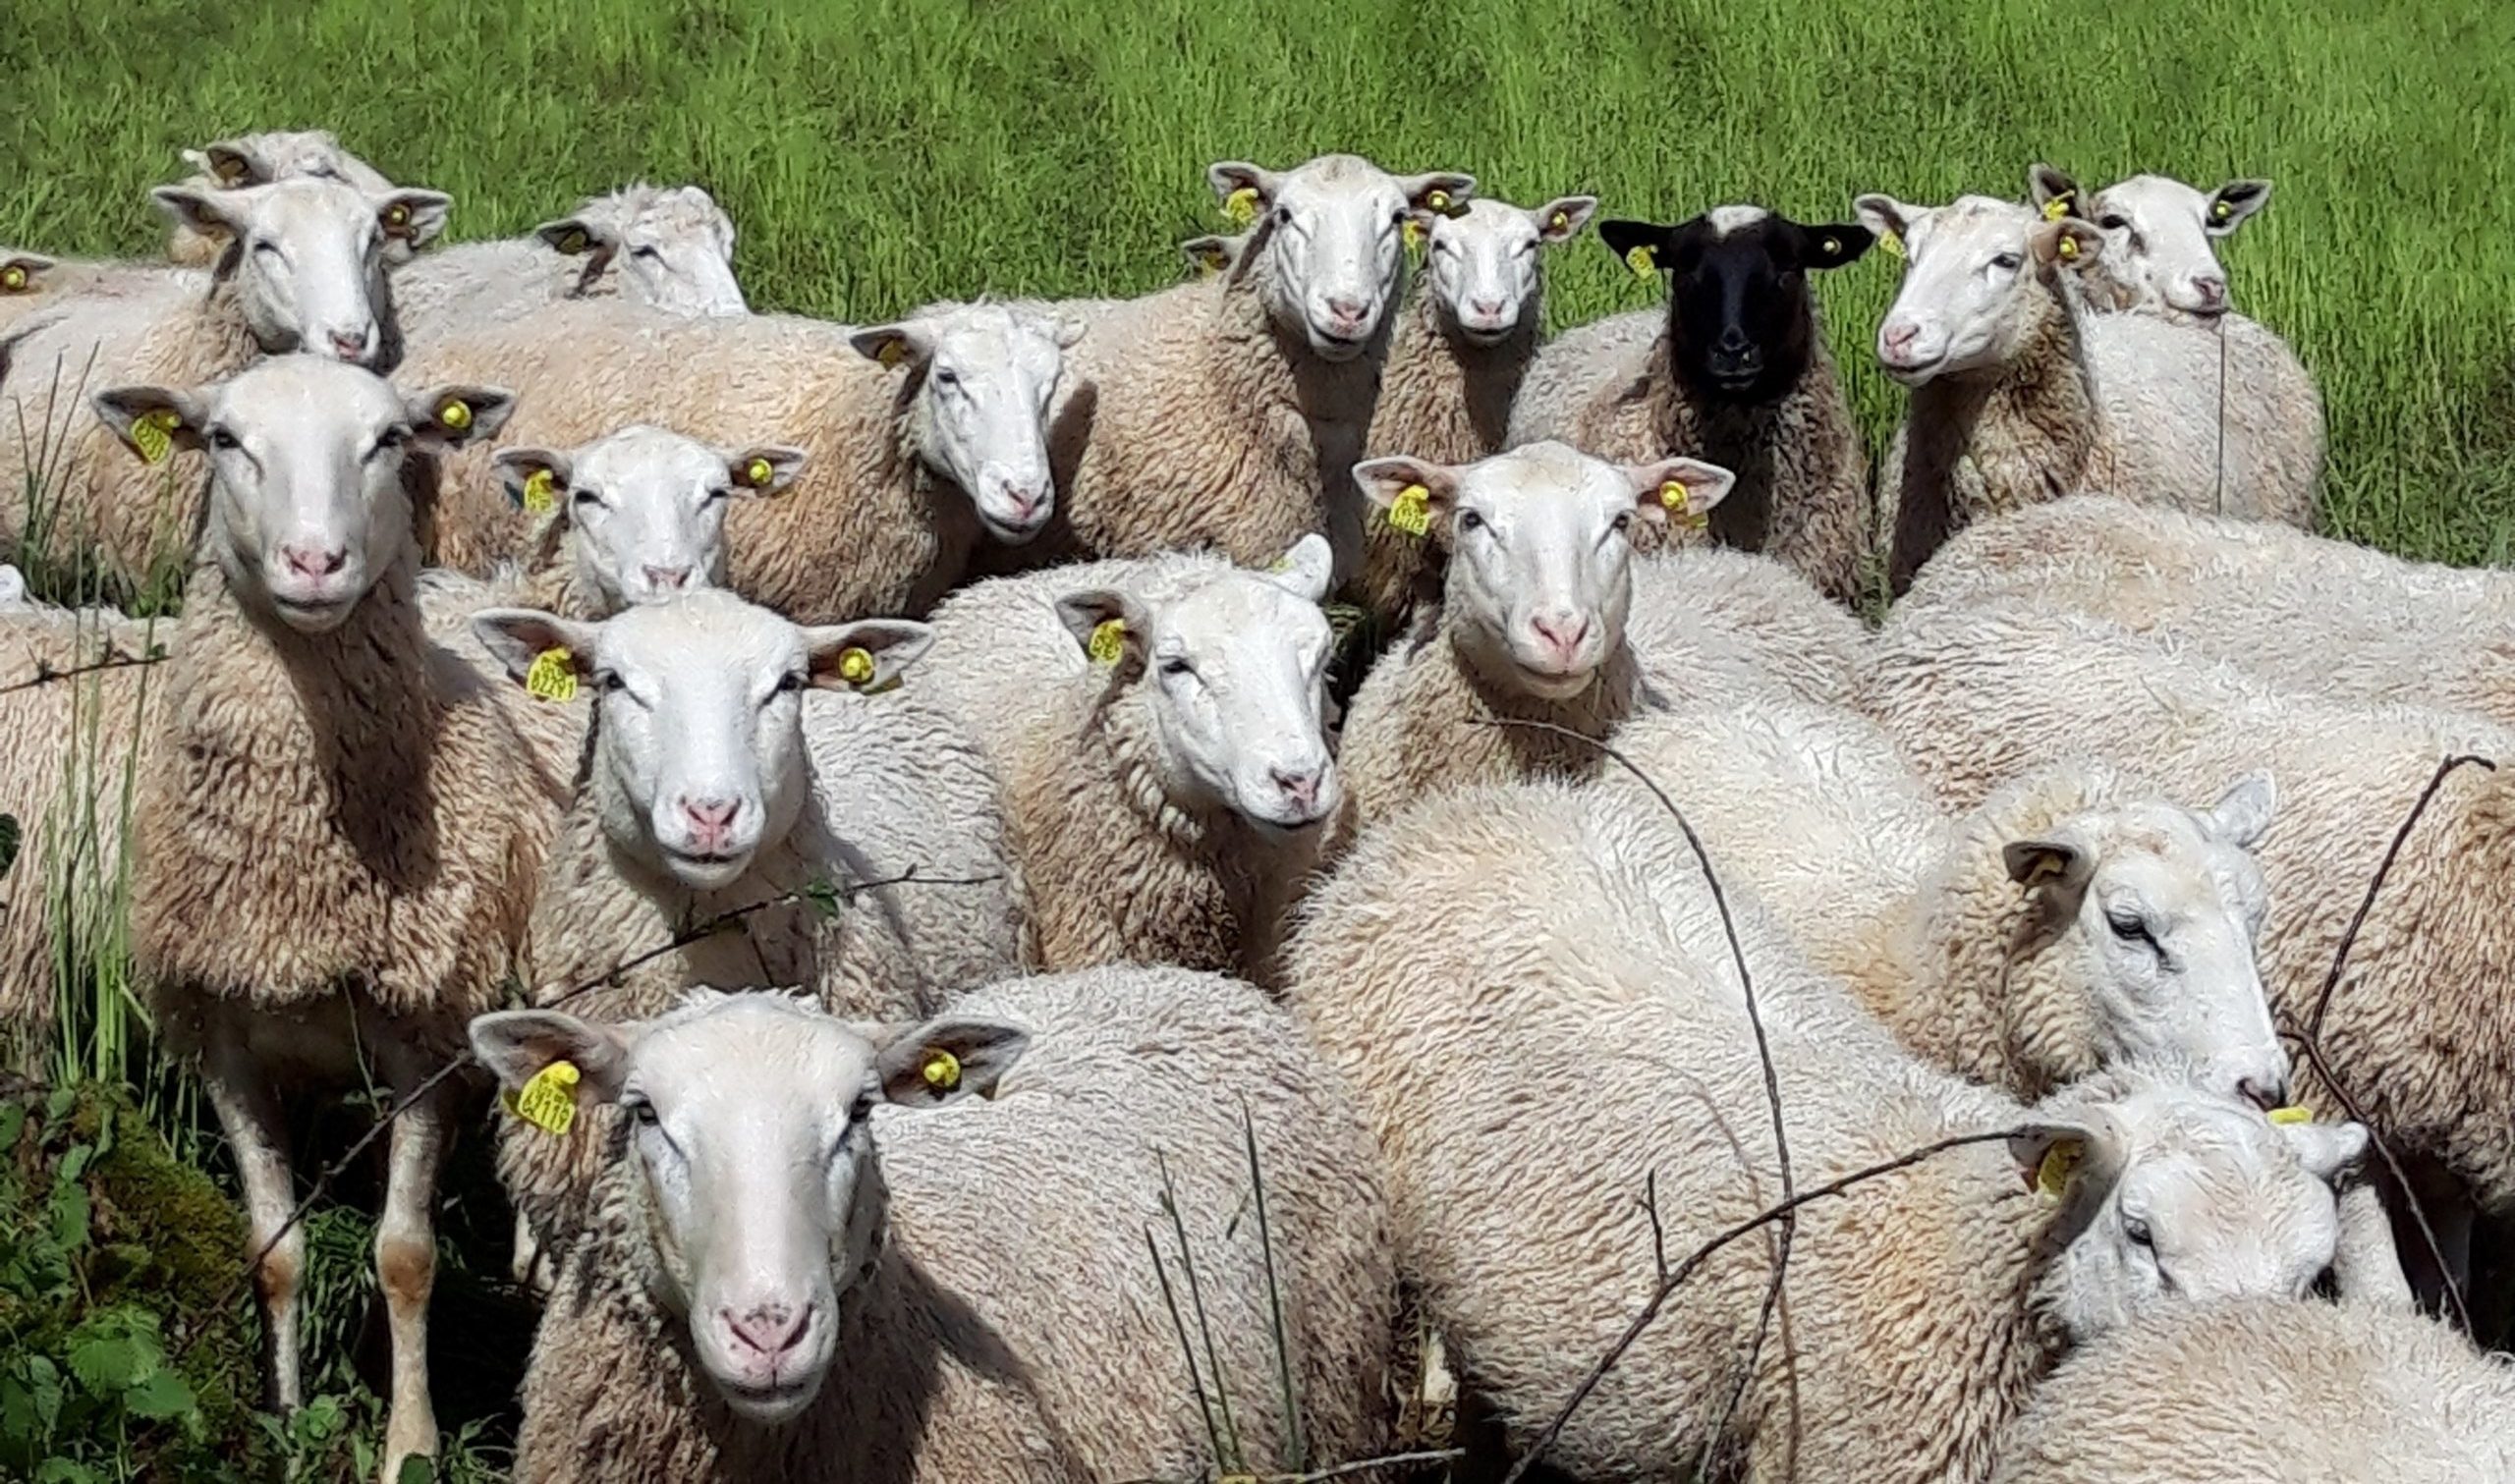 Trouvez le bon matériel pour les soins des moutons et chèvres